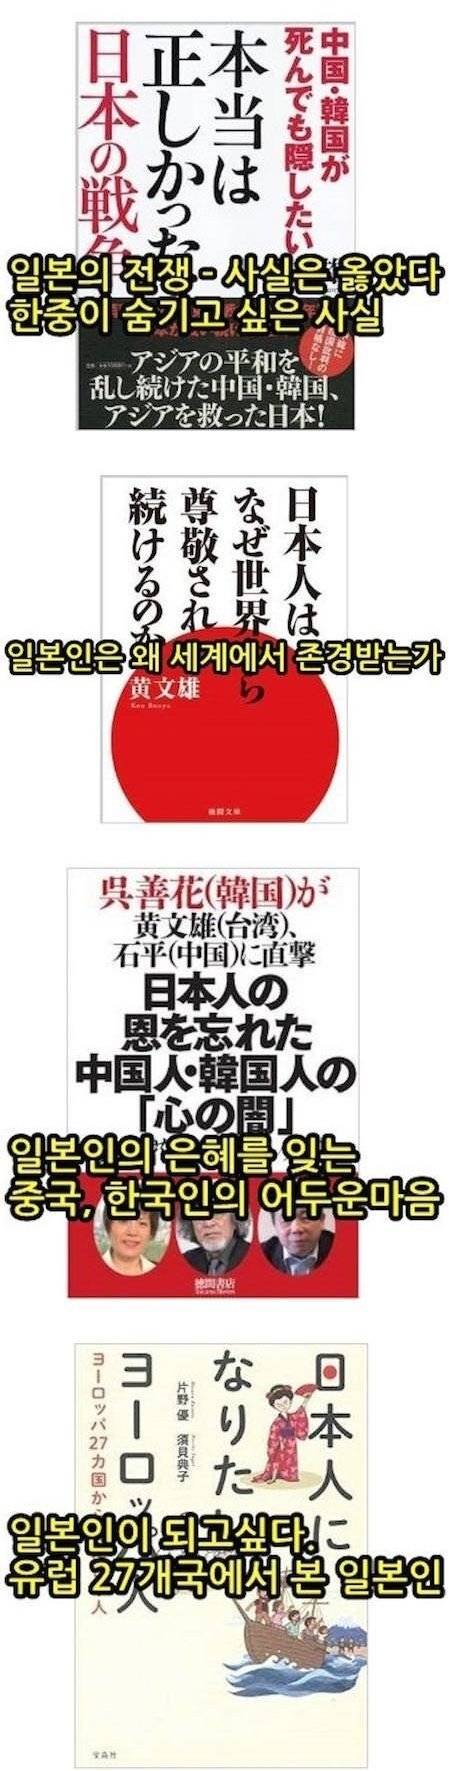 [스압] 일본에서 팔리고있는책.jpg